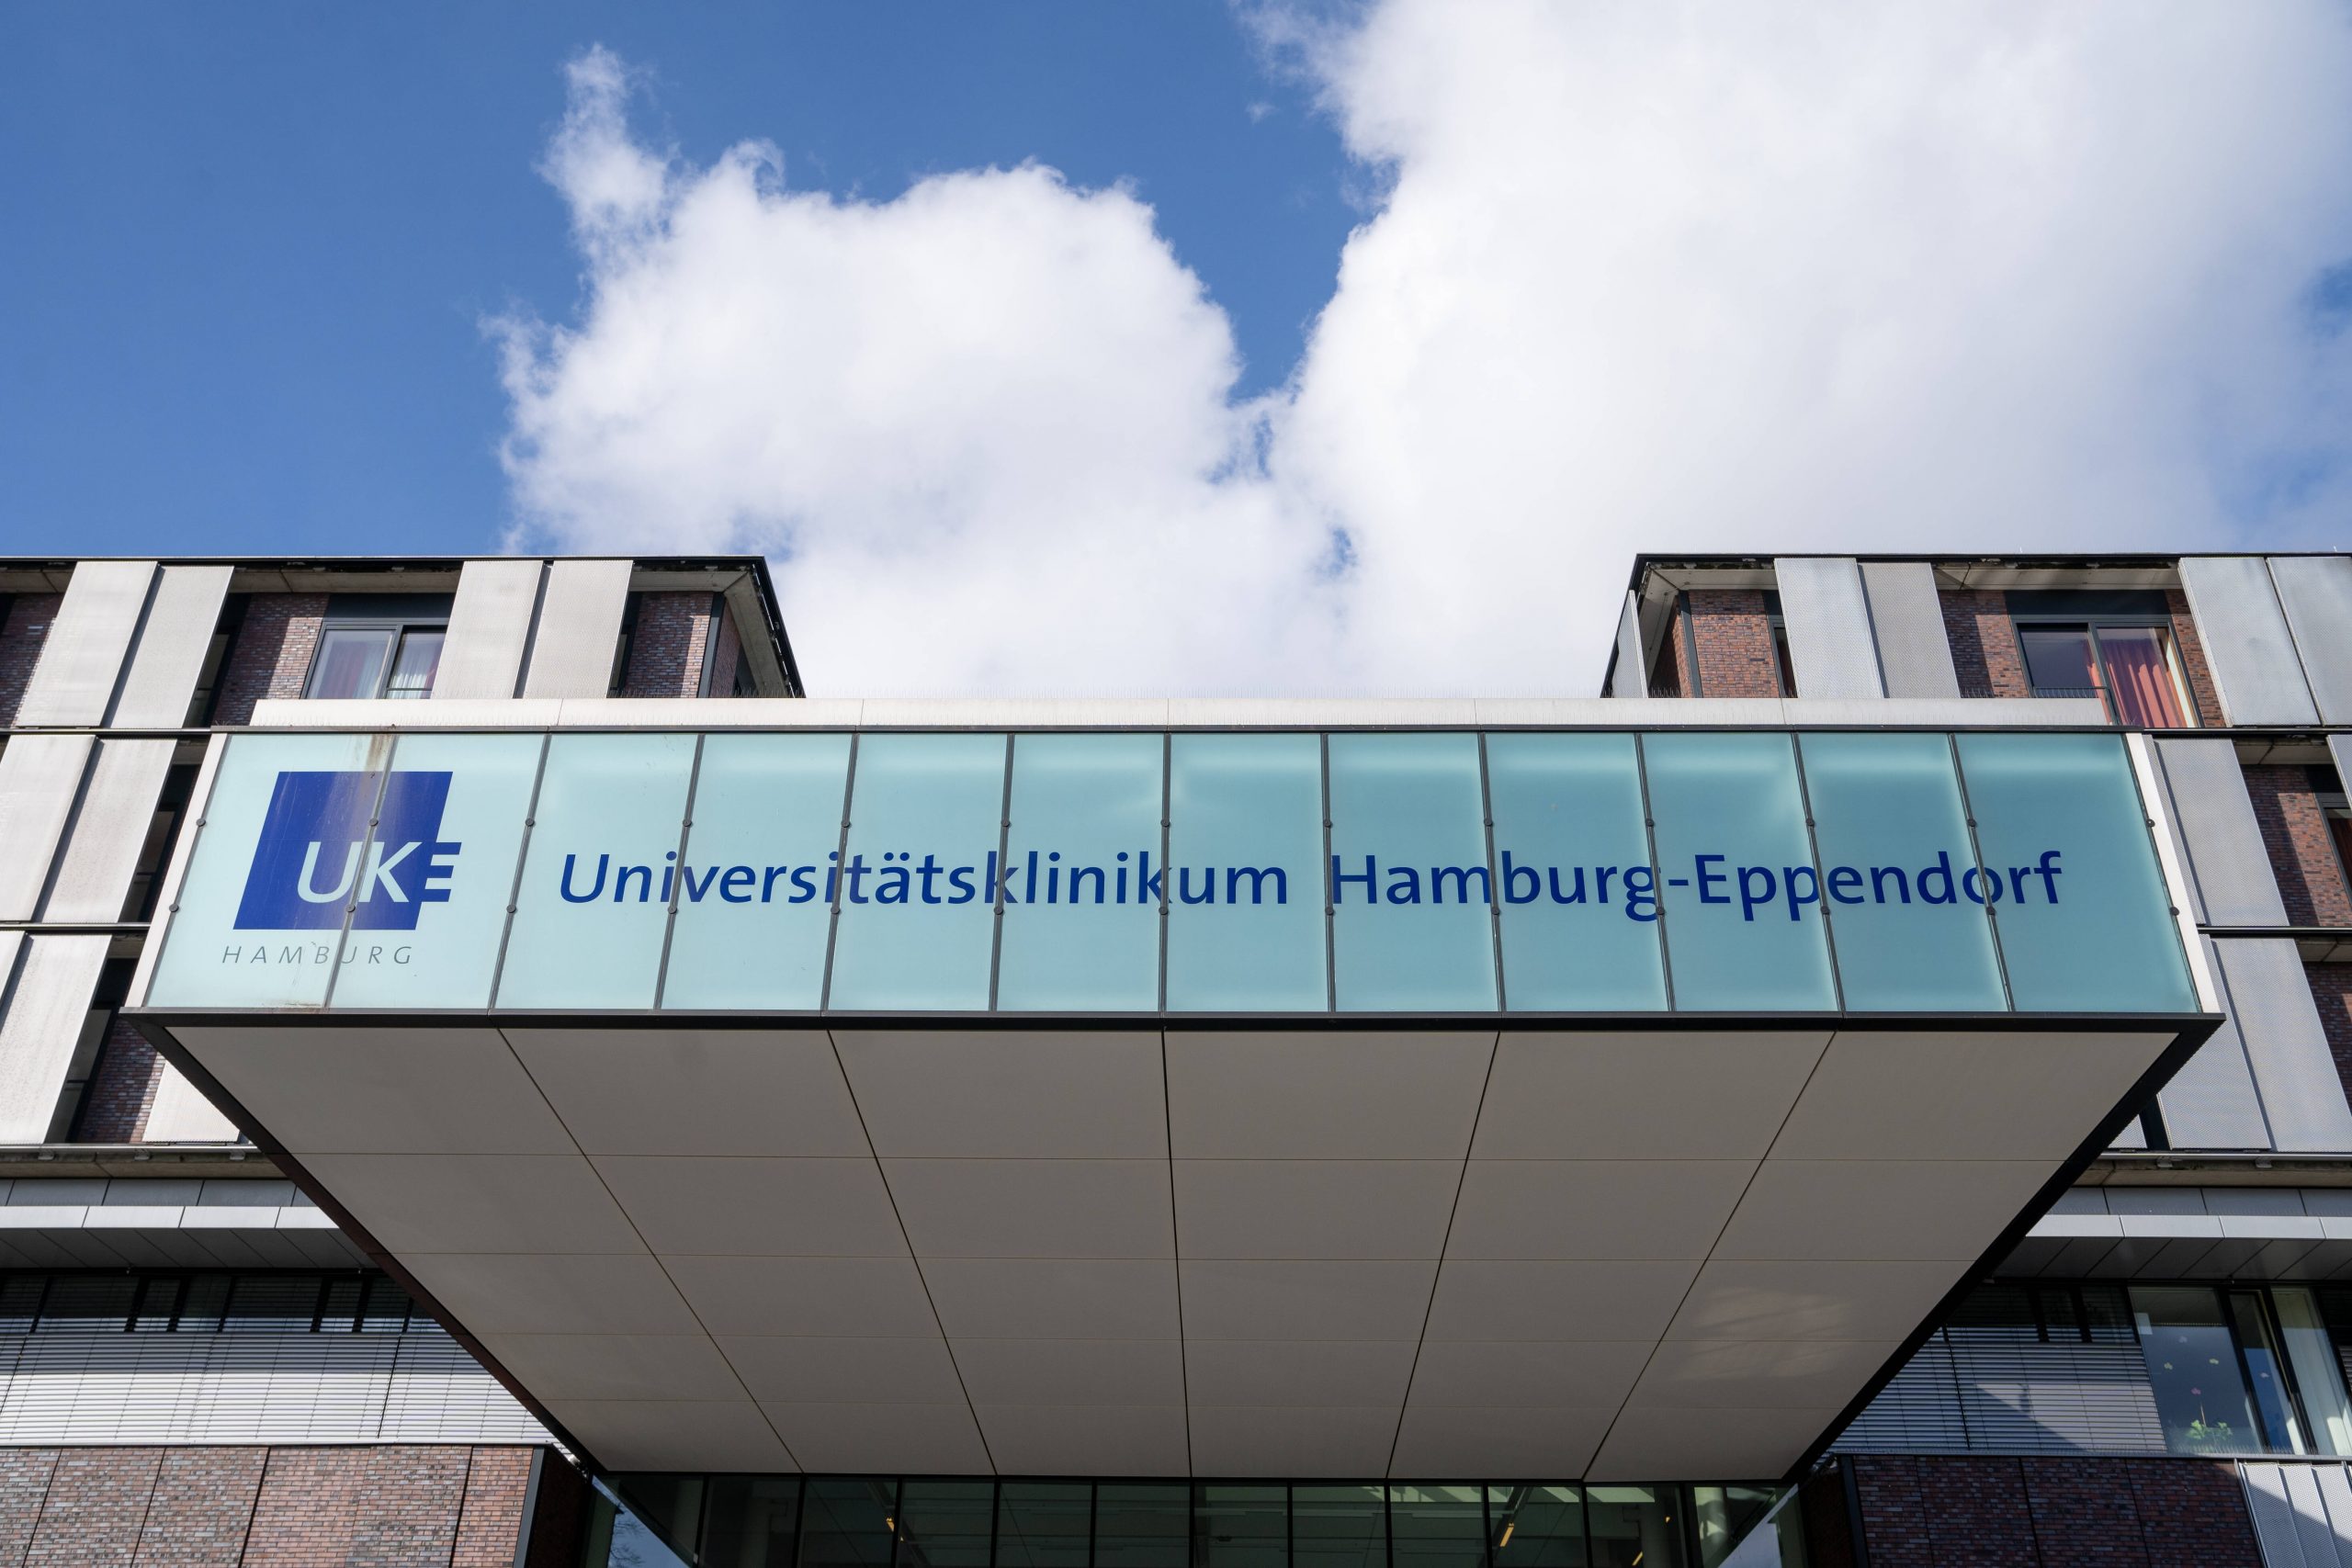 Intensivmediziner am Hamburger Universitätsklinikum Eppendorf (UKE) haben vor eine Zunahme der Zahl an Covid-19-Patienten gewarnt.